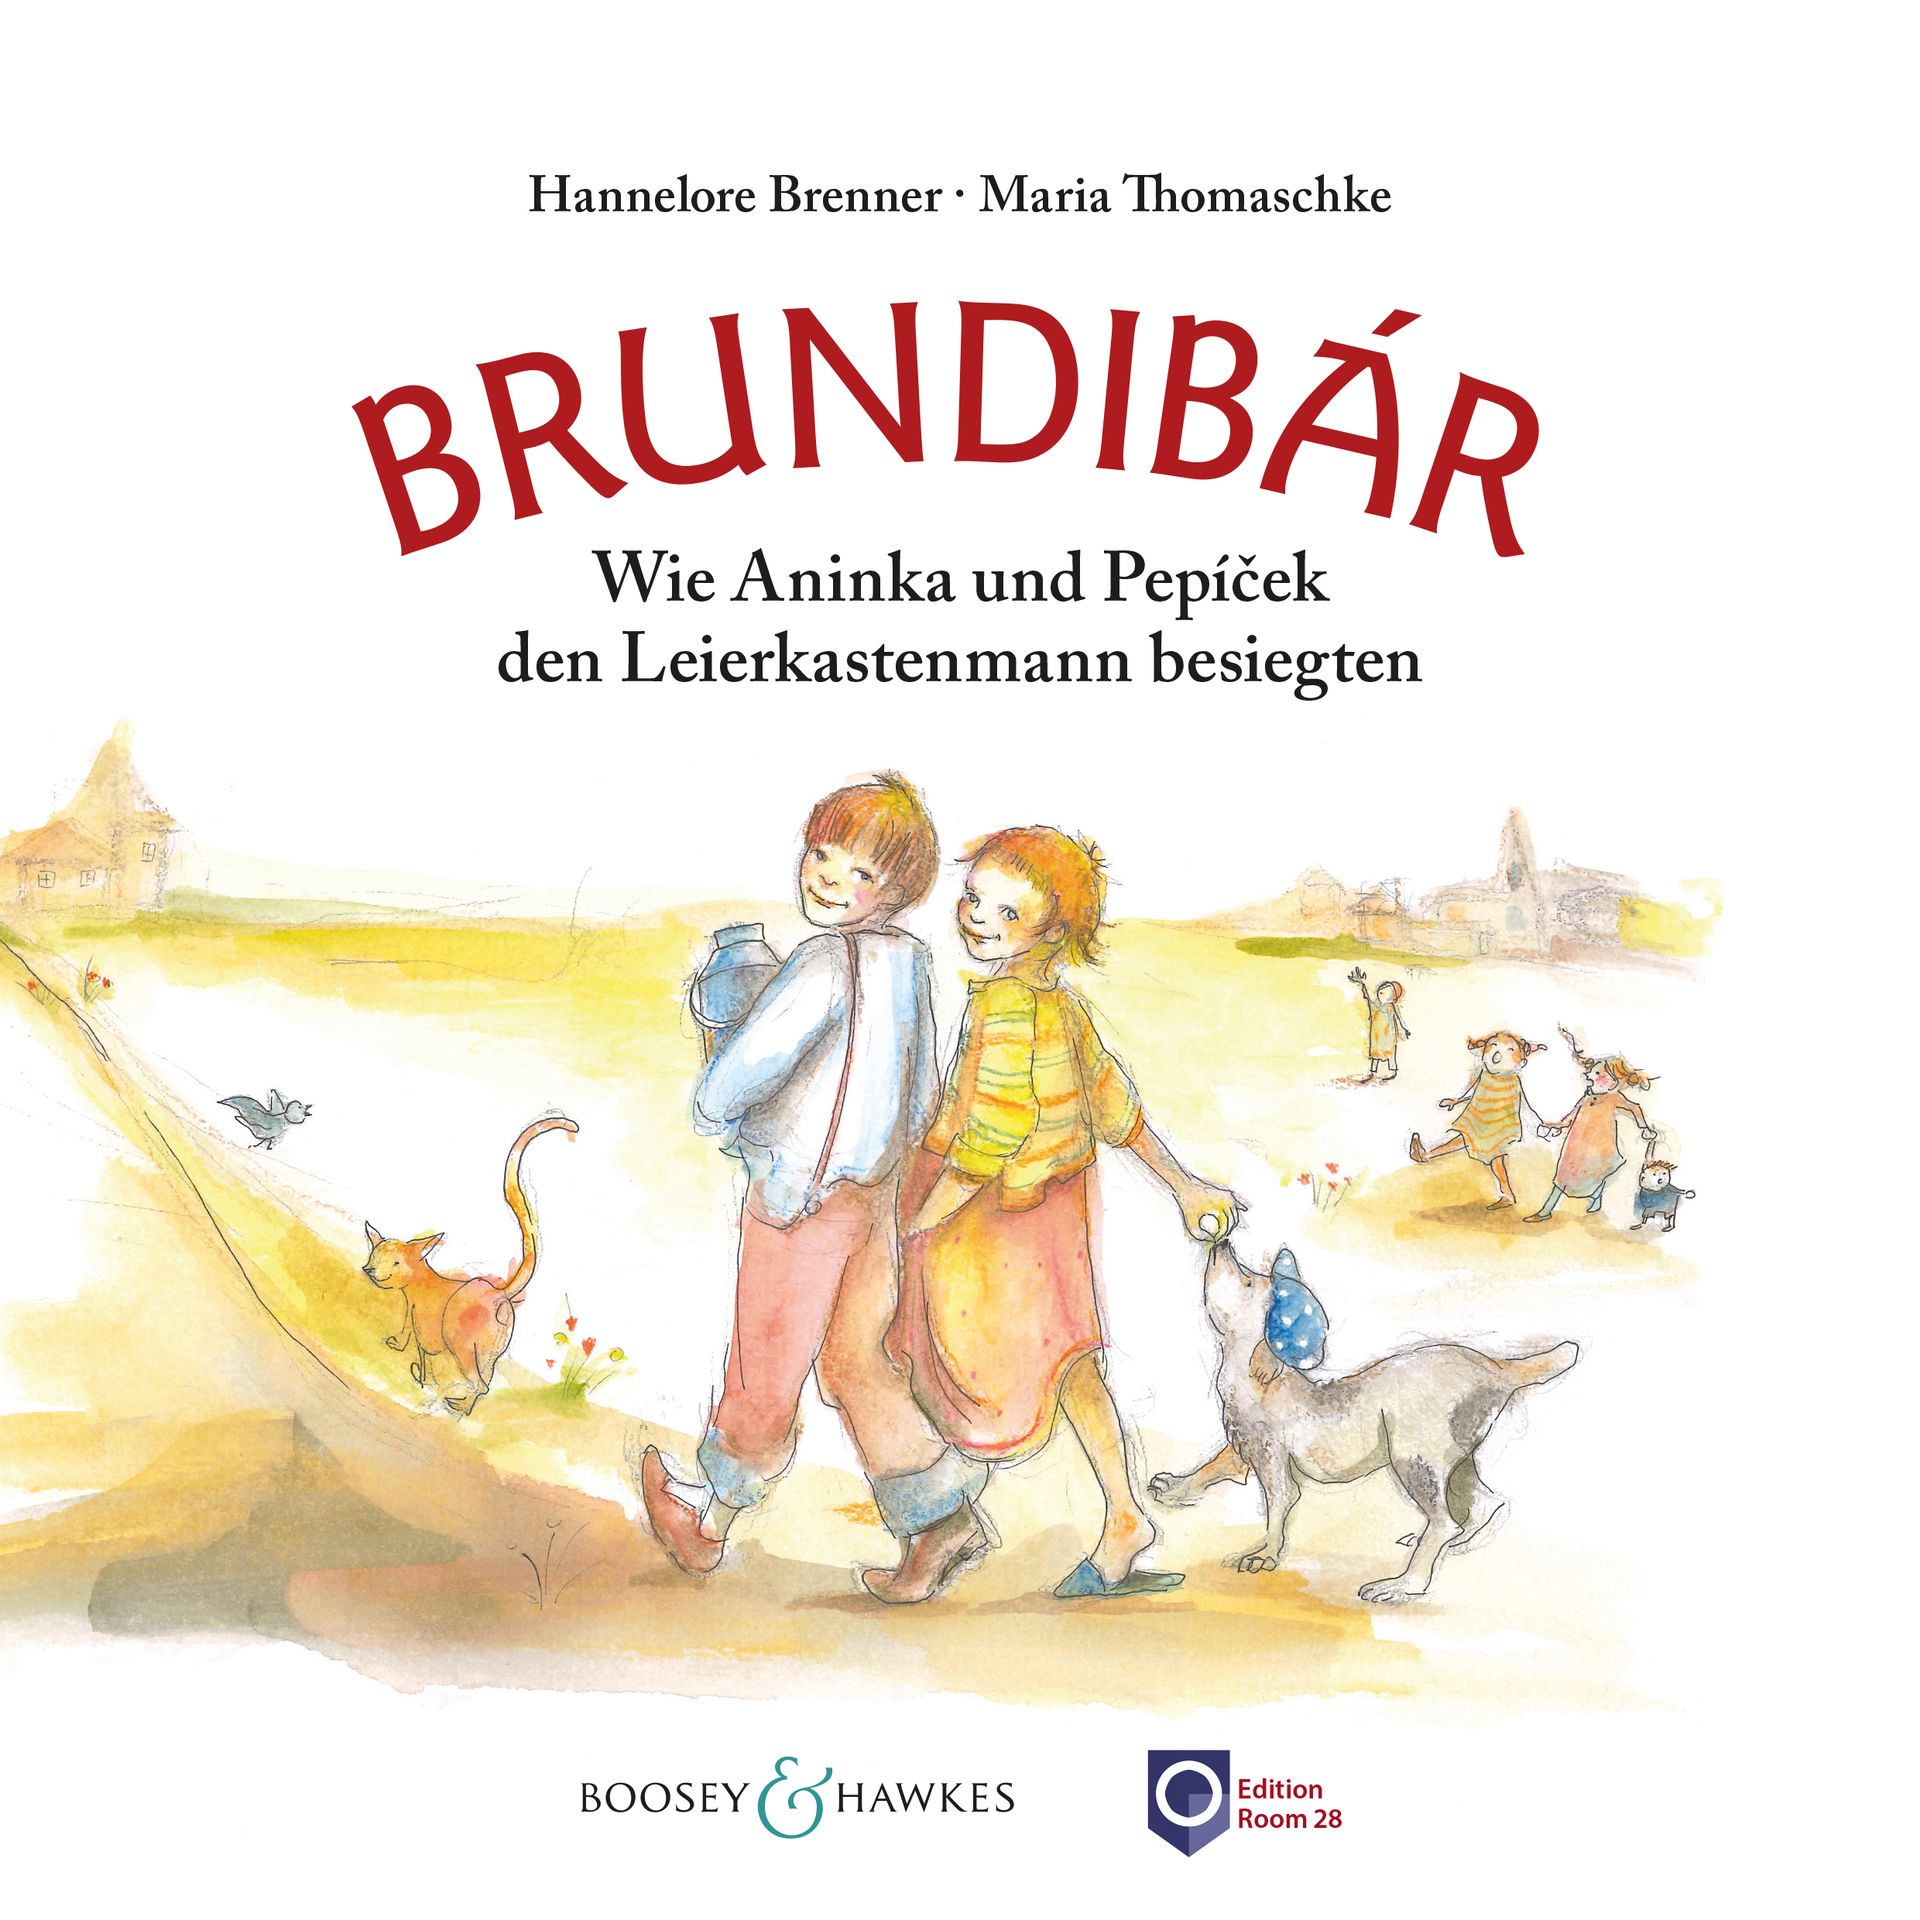 Brundibar-Kinderbuch von Hannelore Brenner mit Bildern von Maria Thomaschke